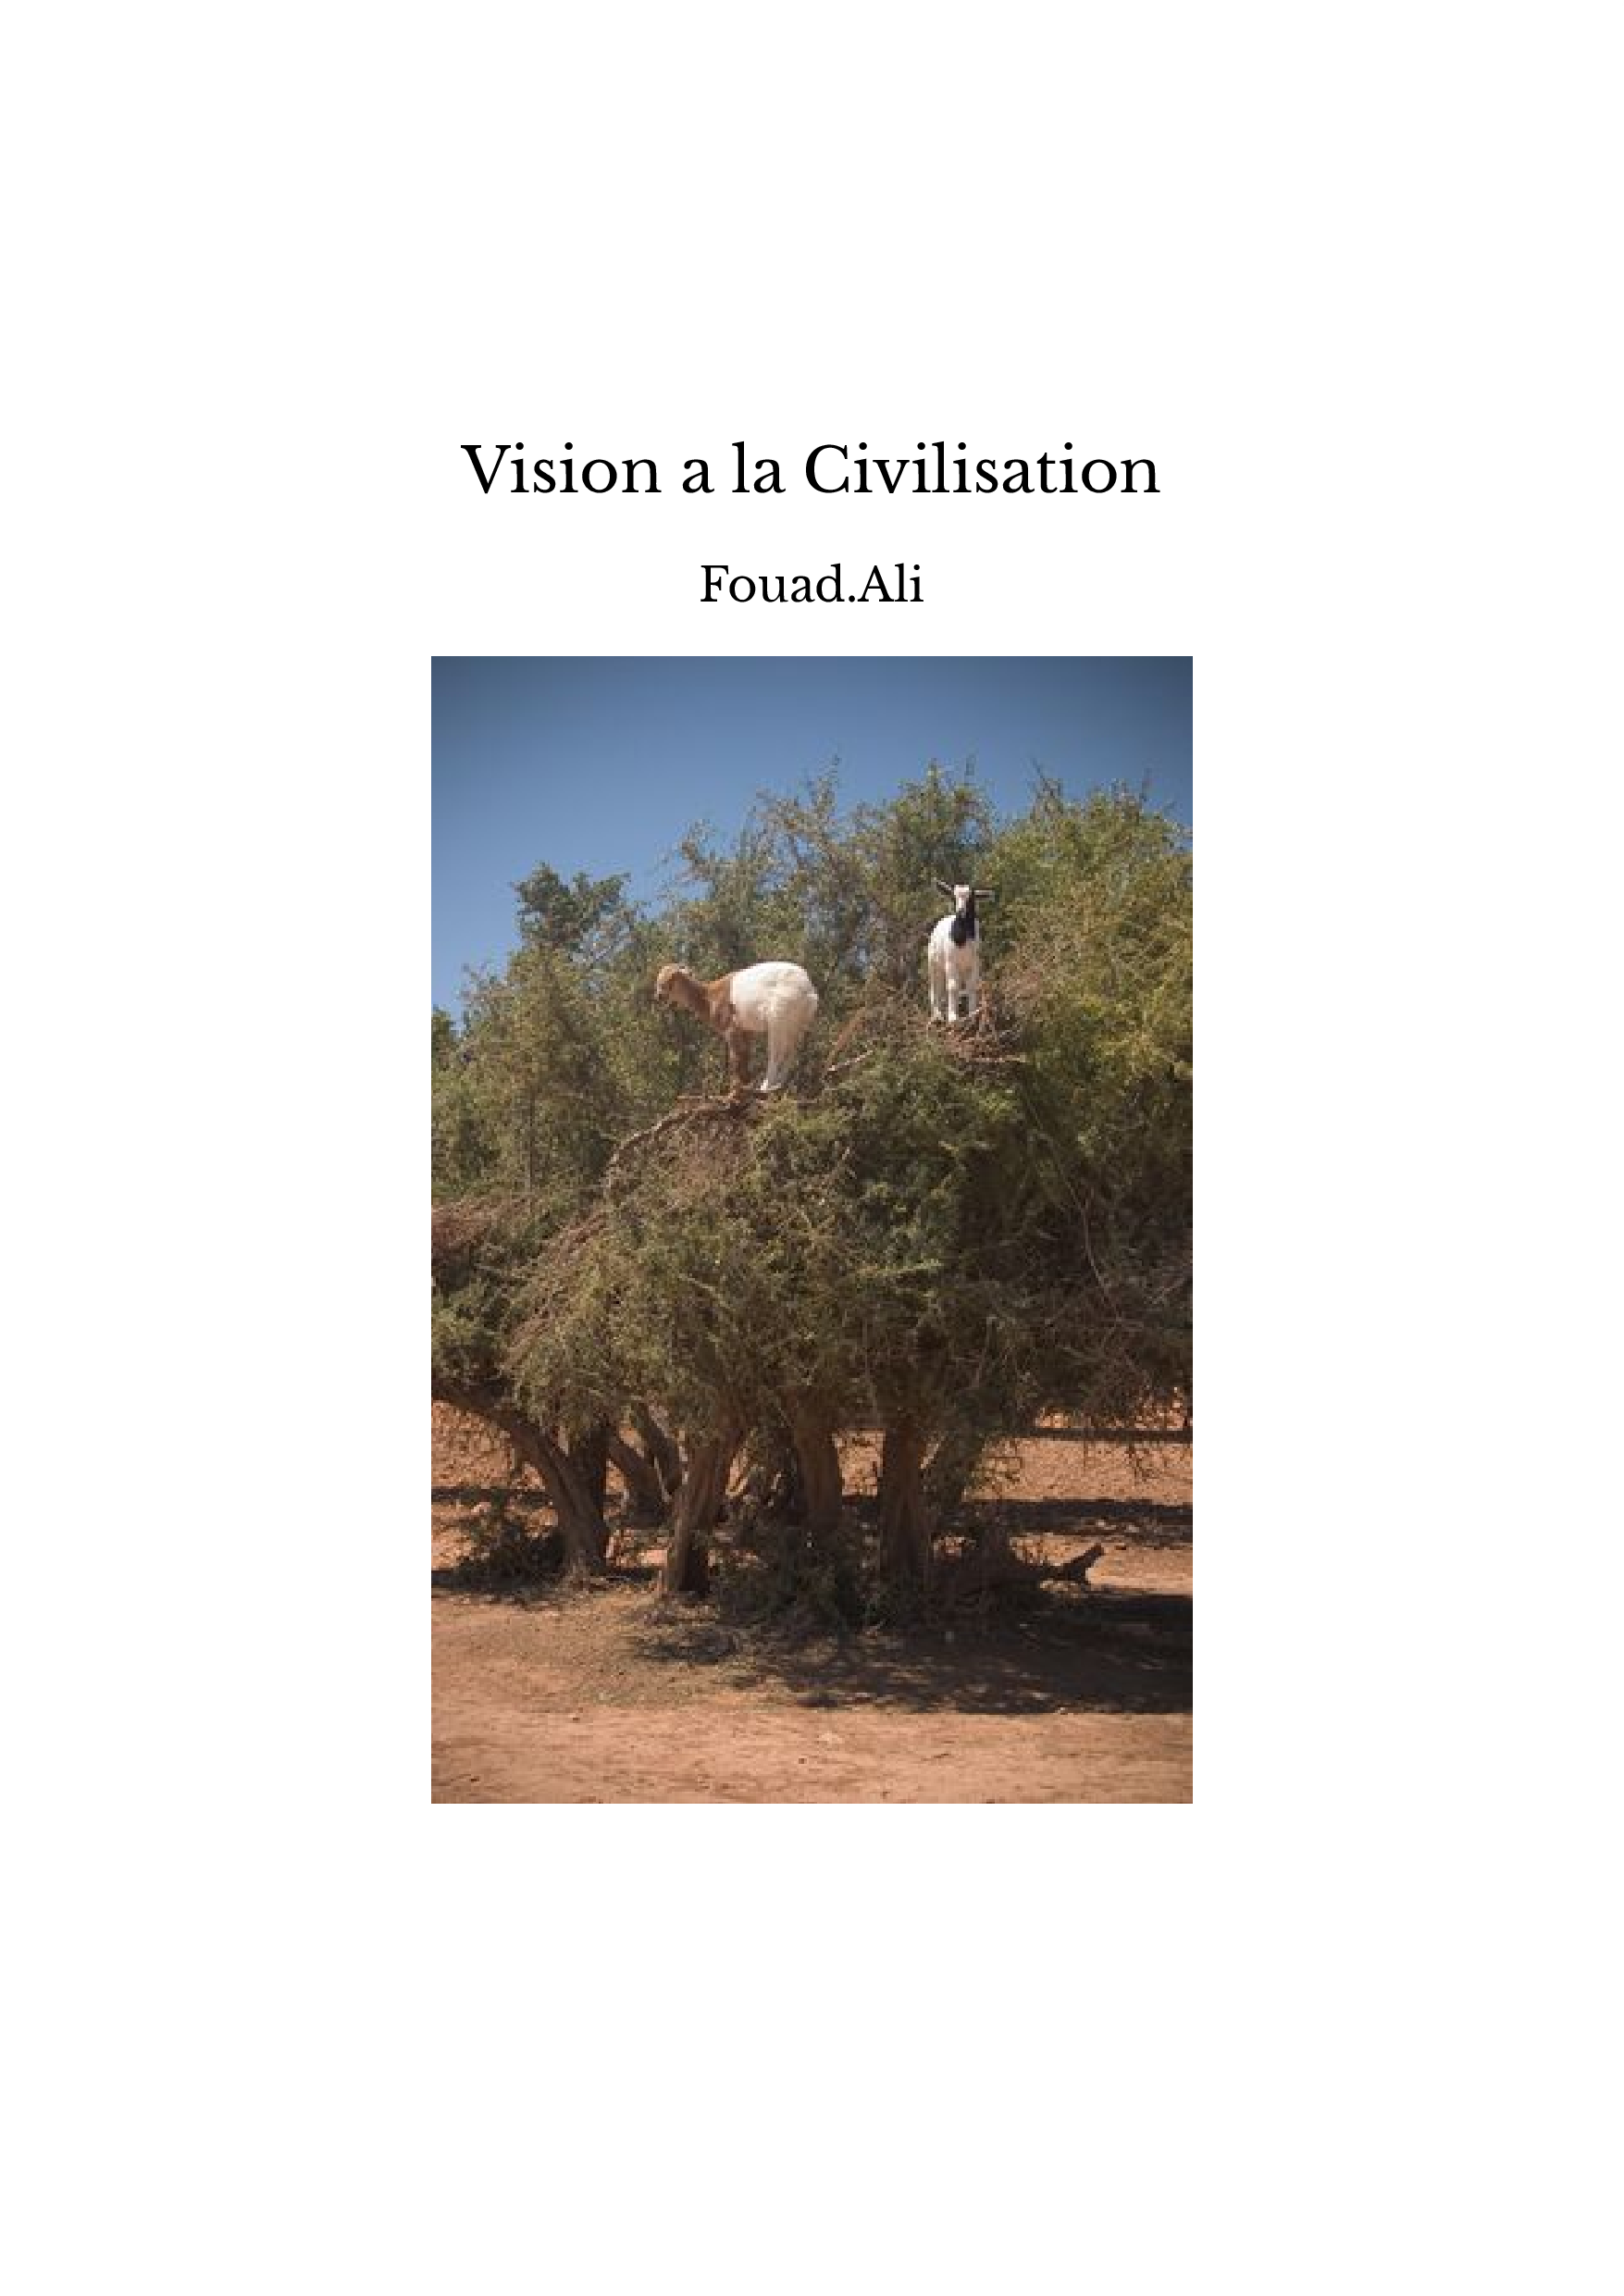 Vision a la Civilisation